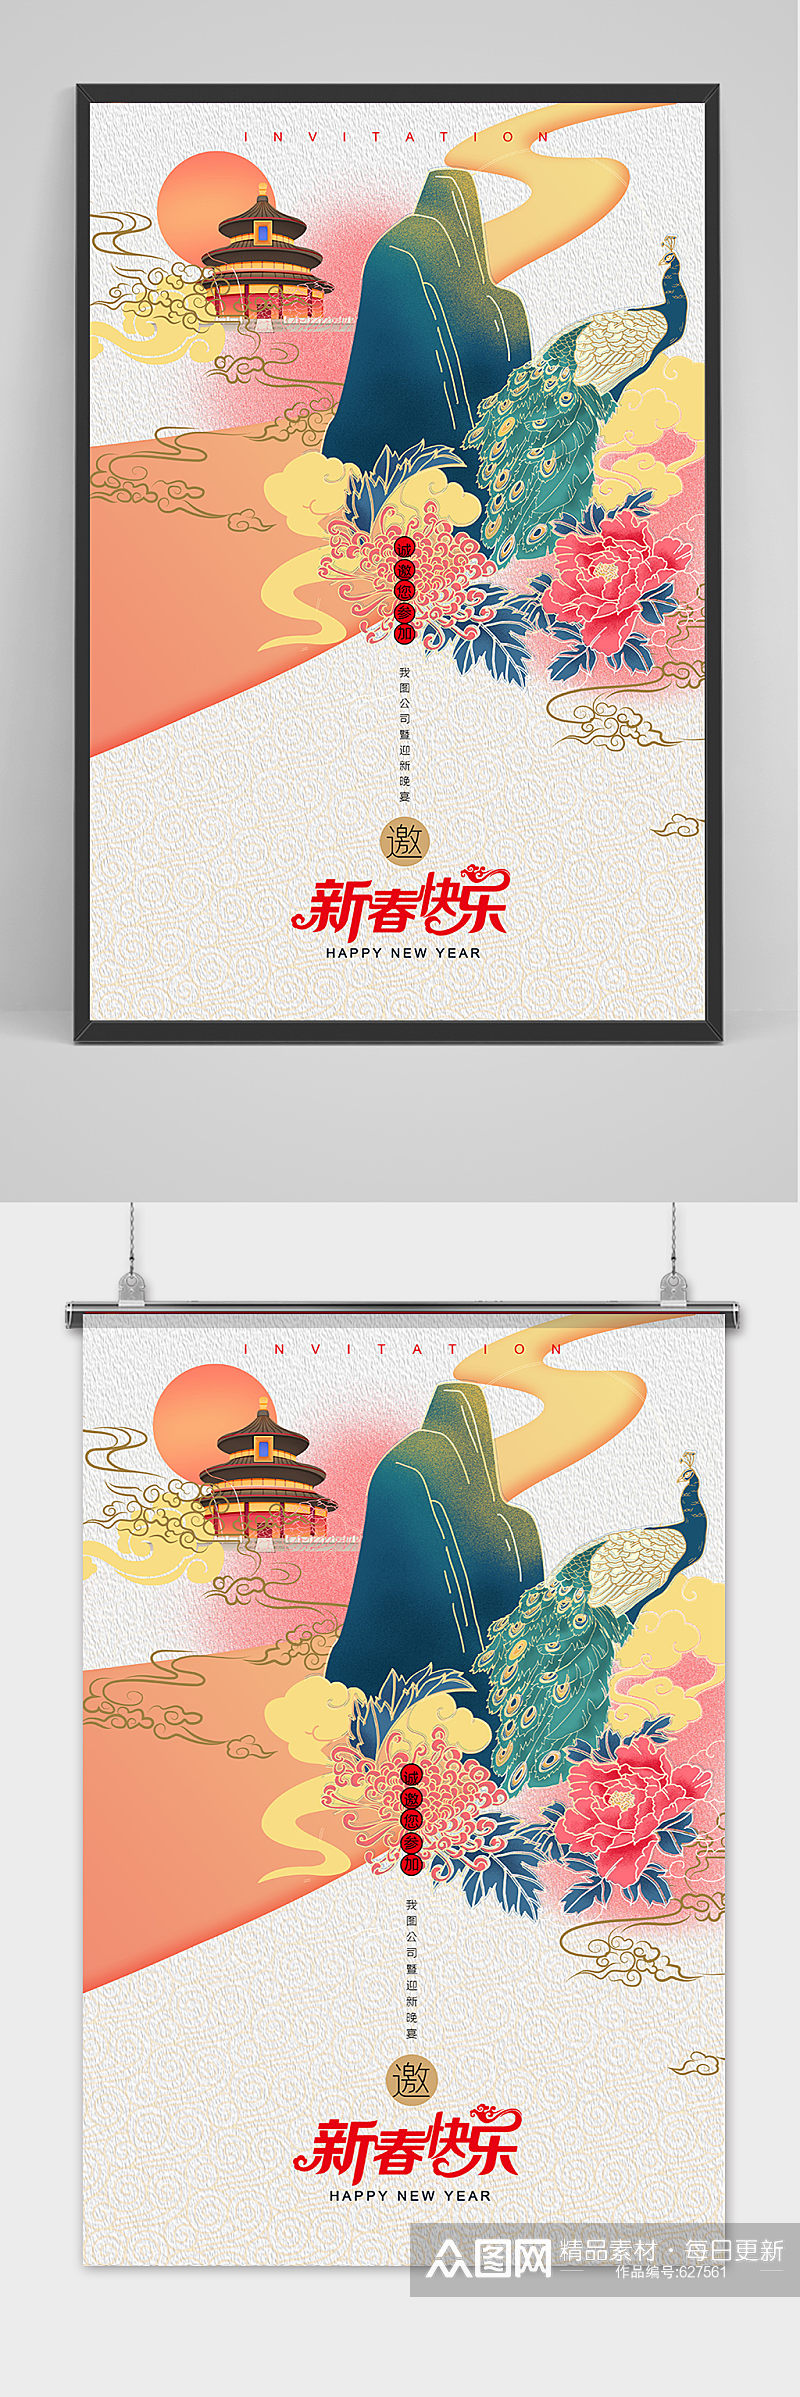 简约中国风邀请函海报设计模板素材